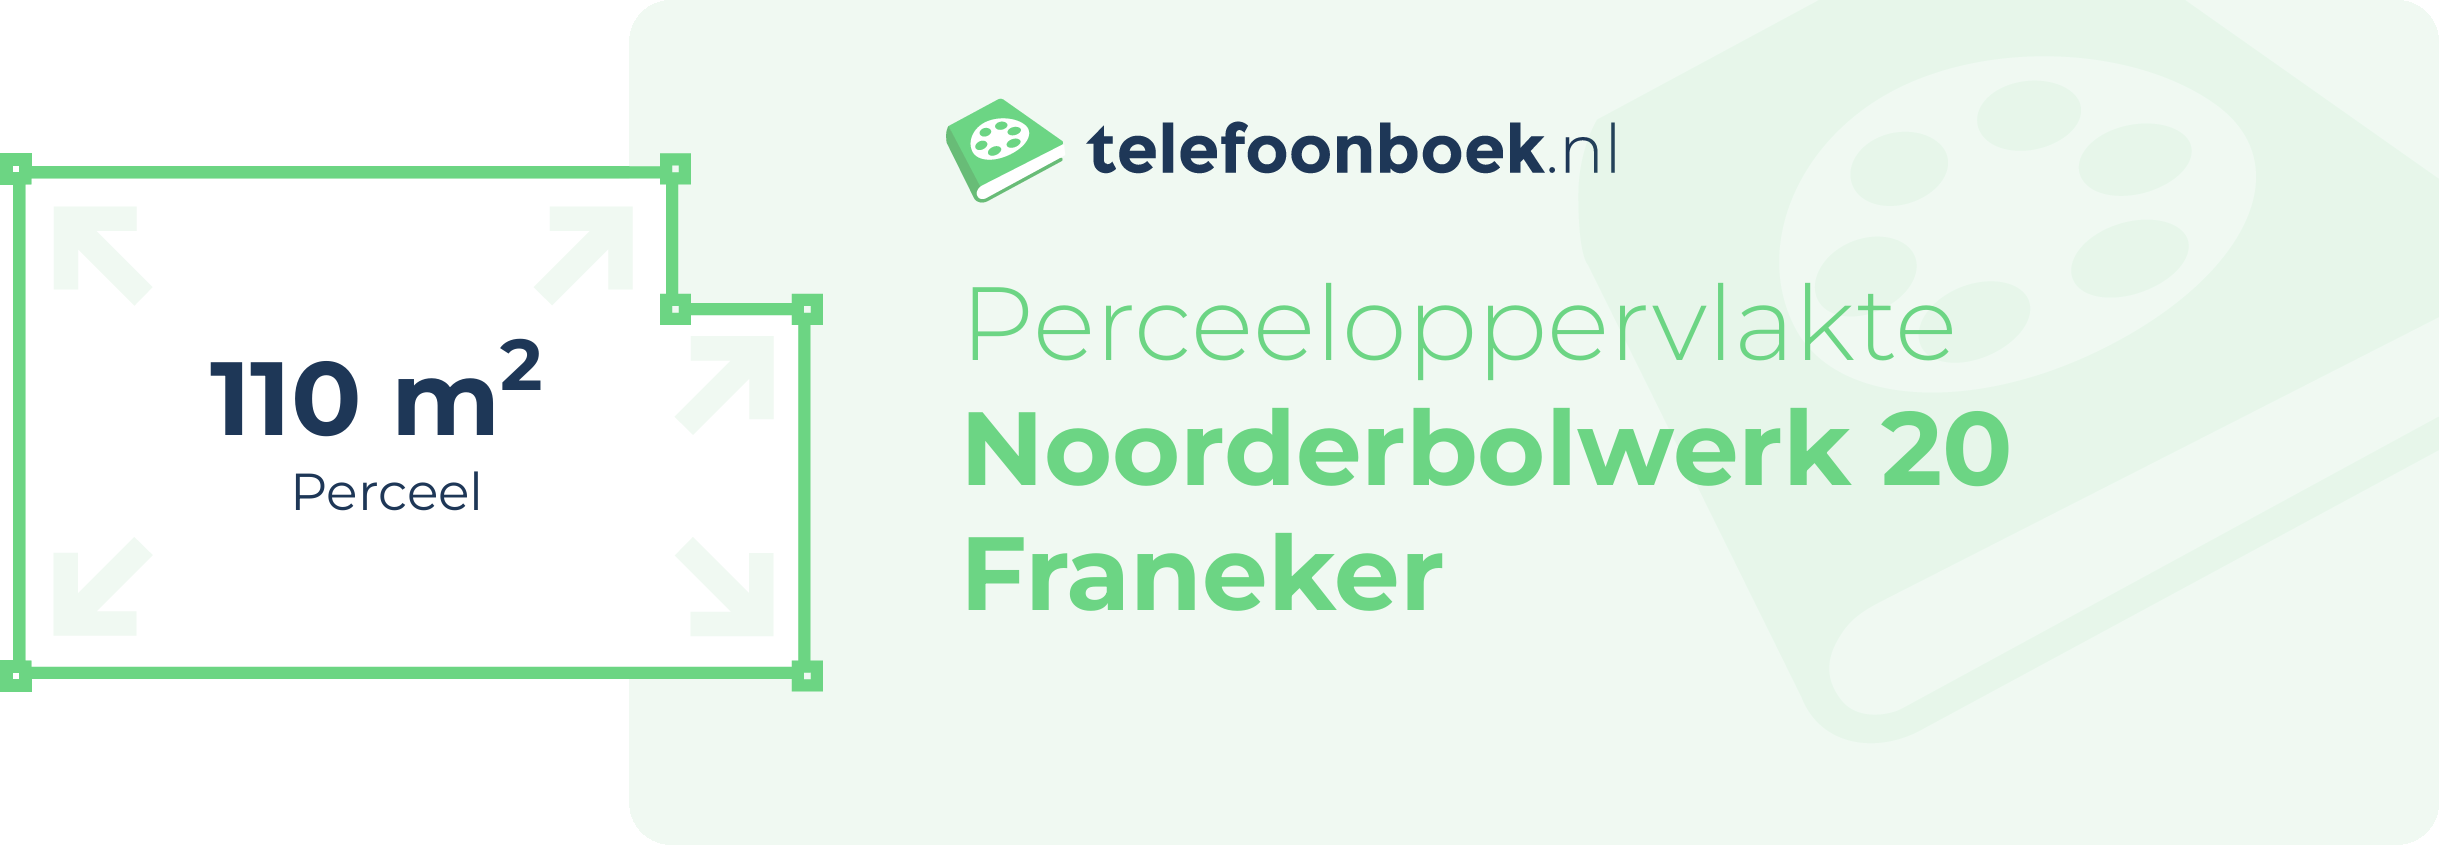 Perceeloppervlakte Noorderbolwerk 20 Franeker